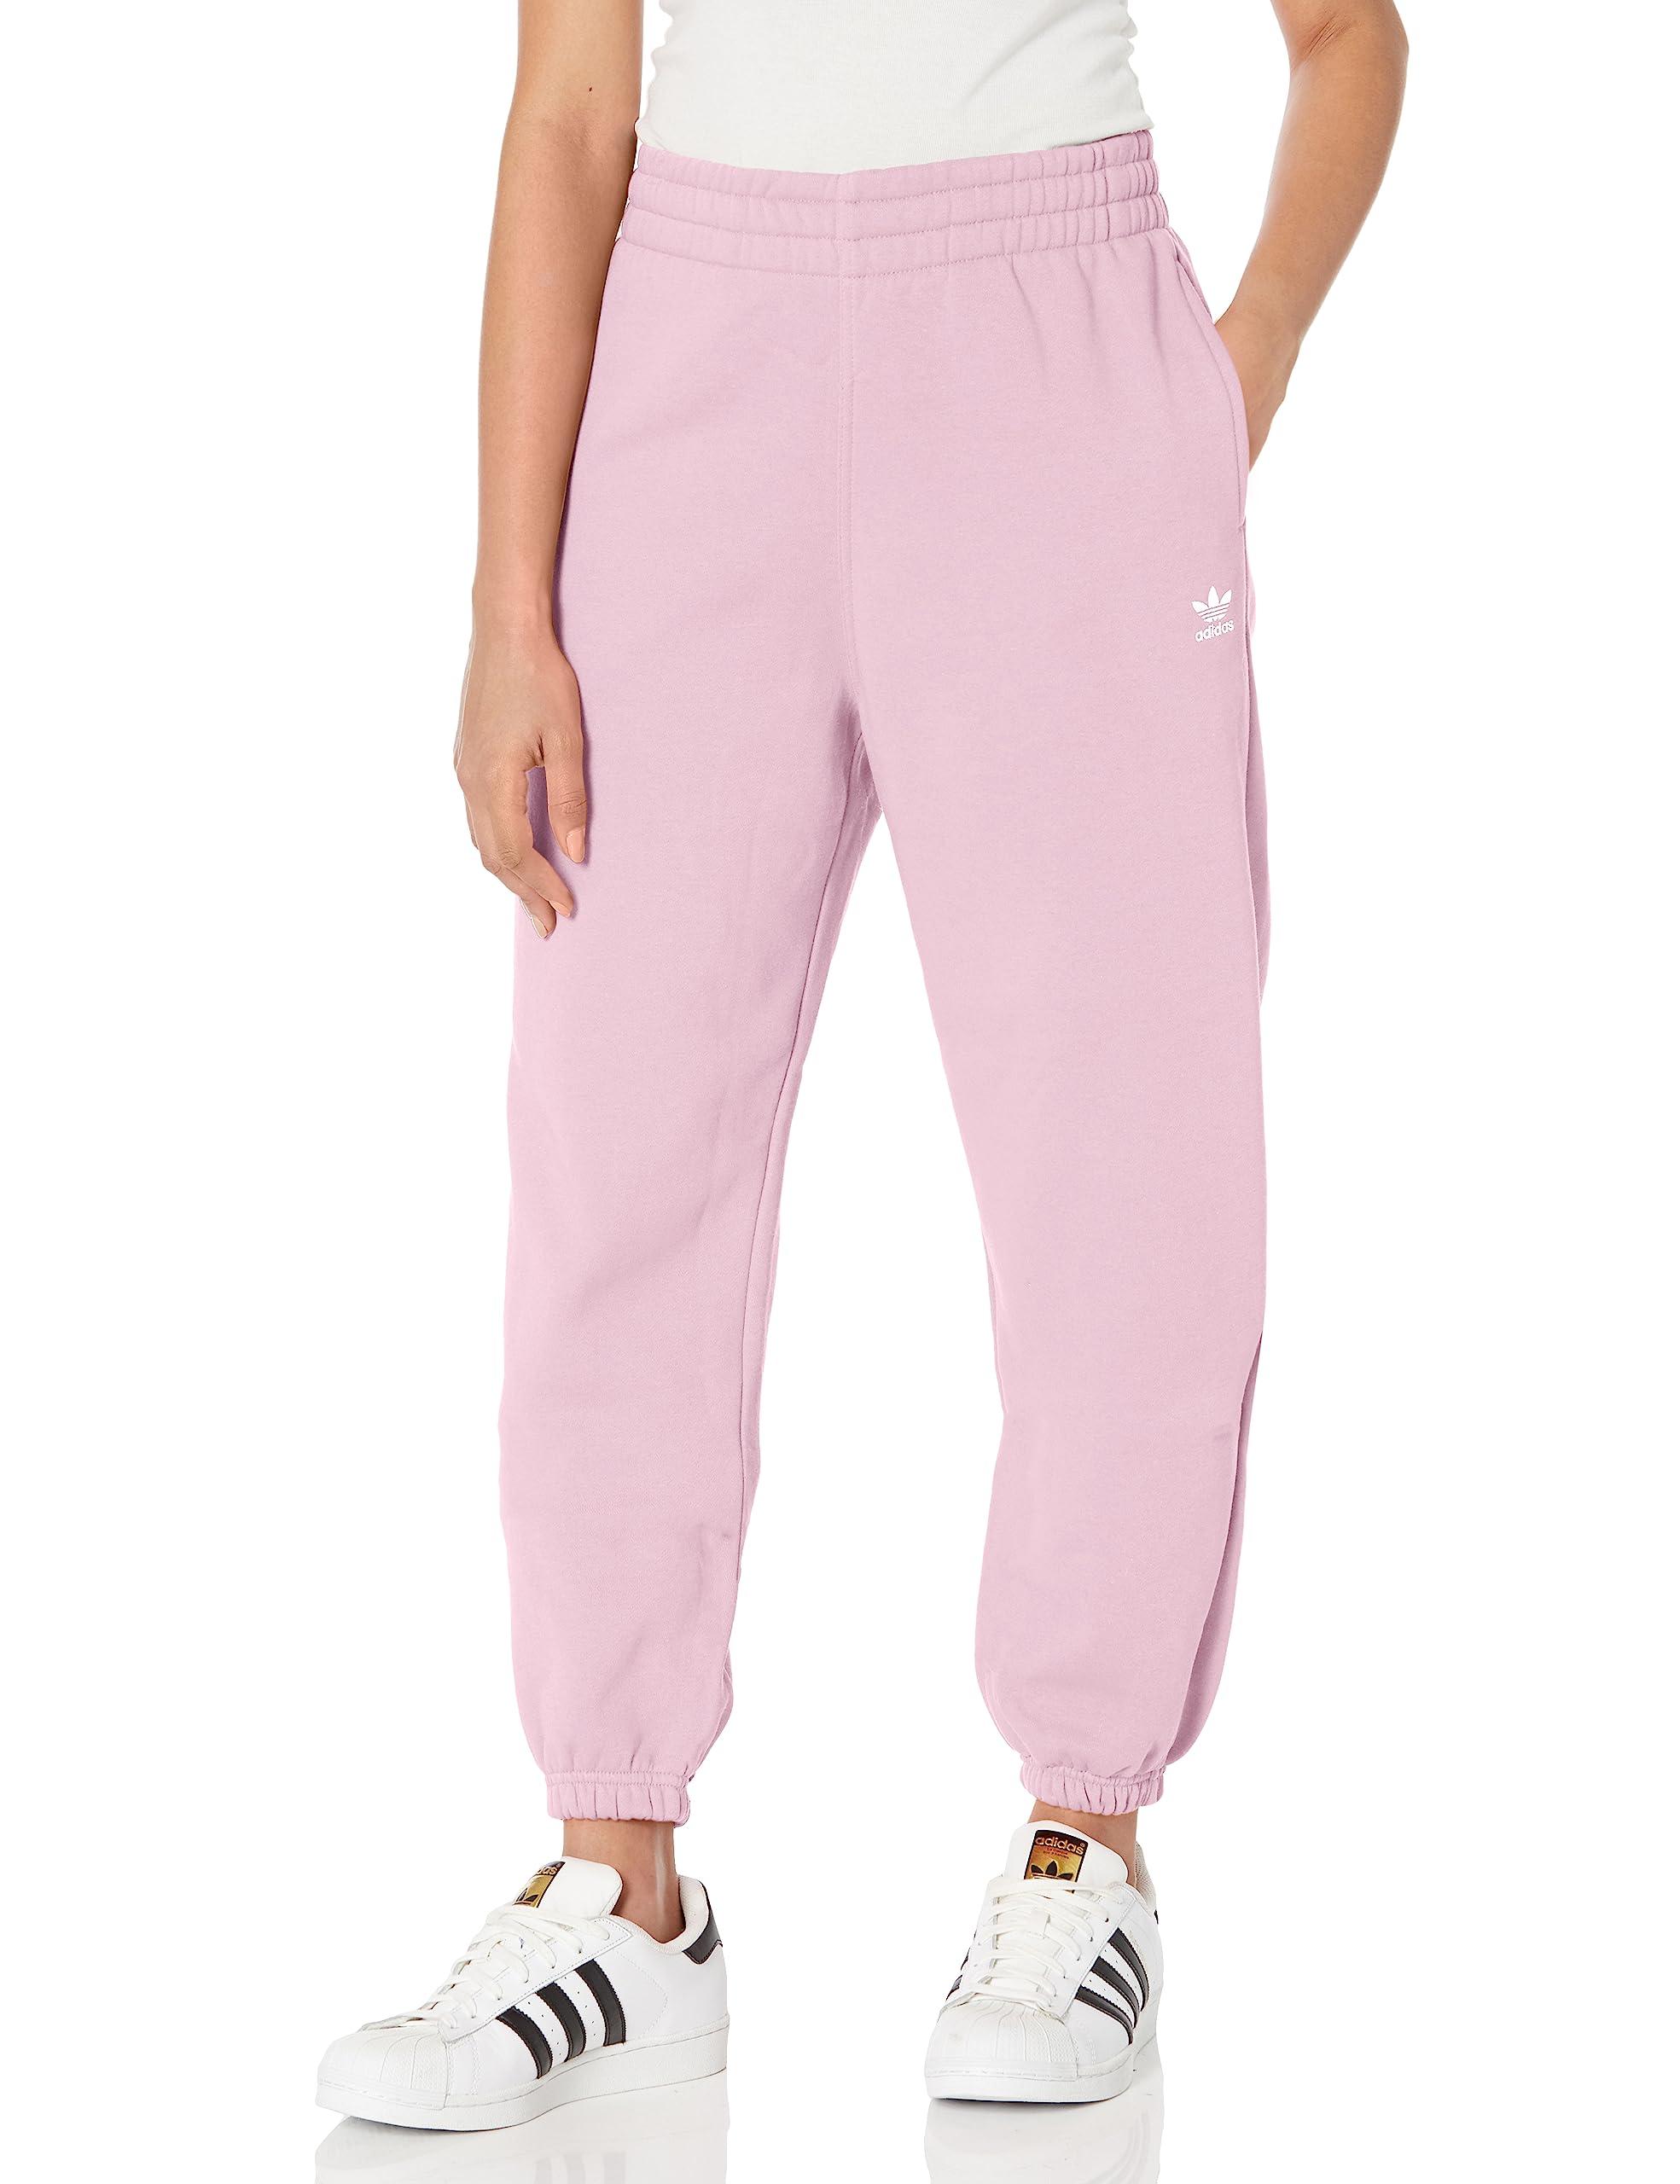 adidas Originals Essentials Fleece Joggers in Pink | Lyst